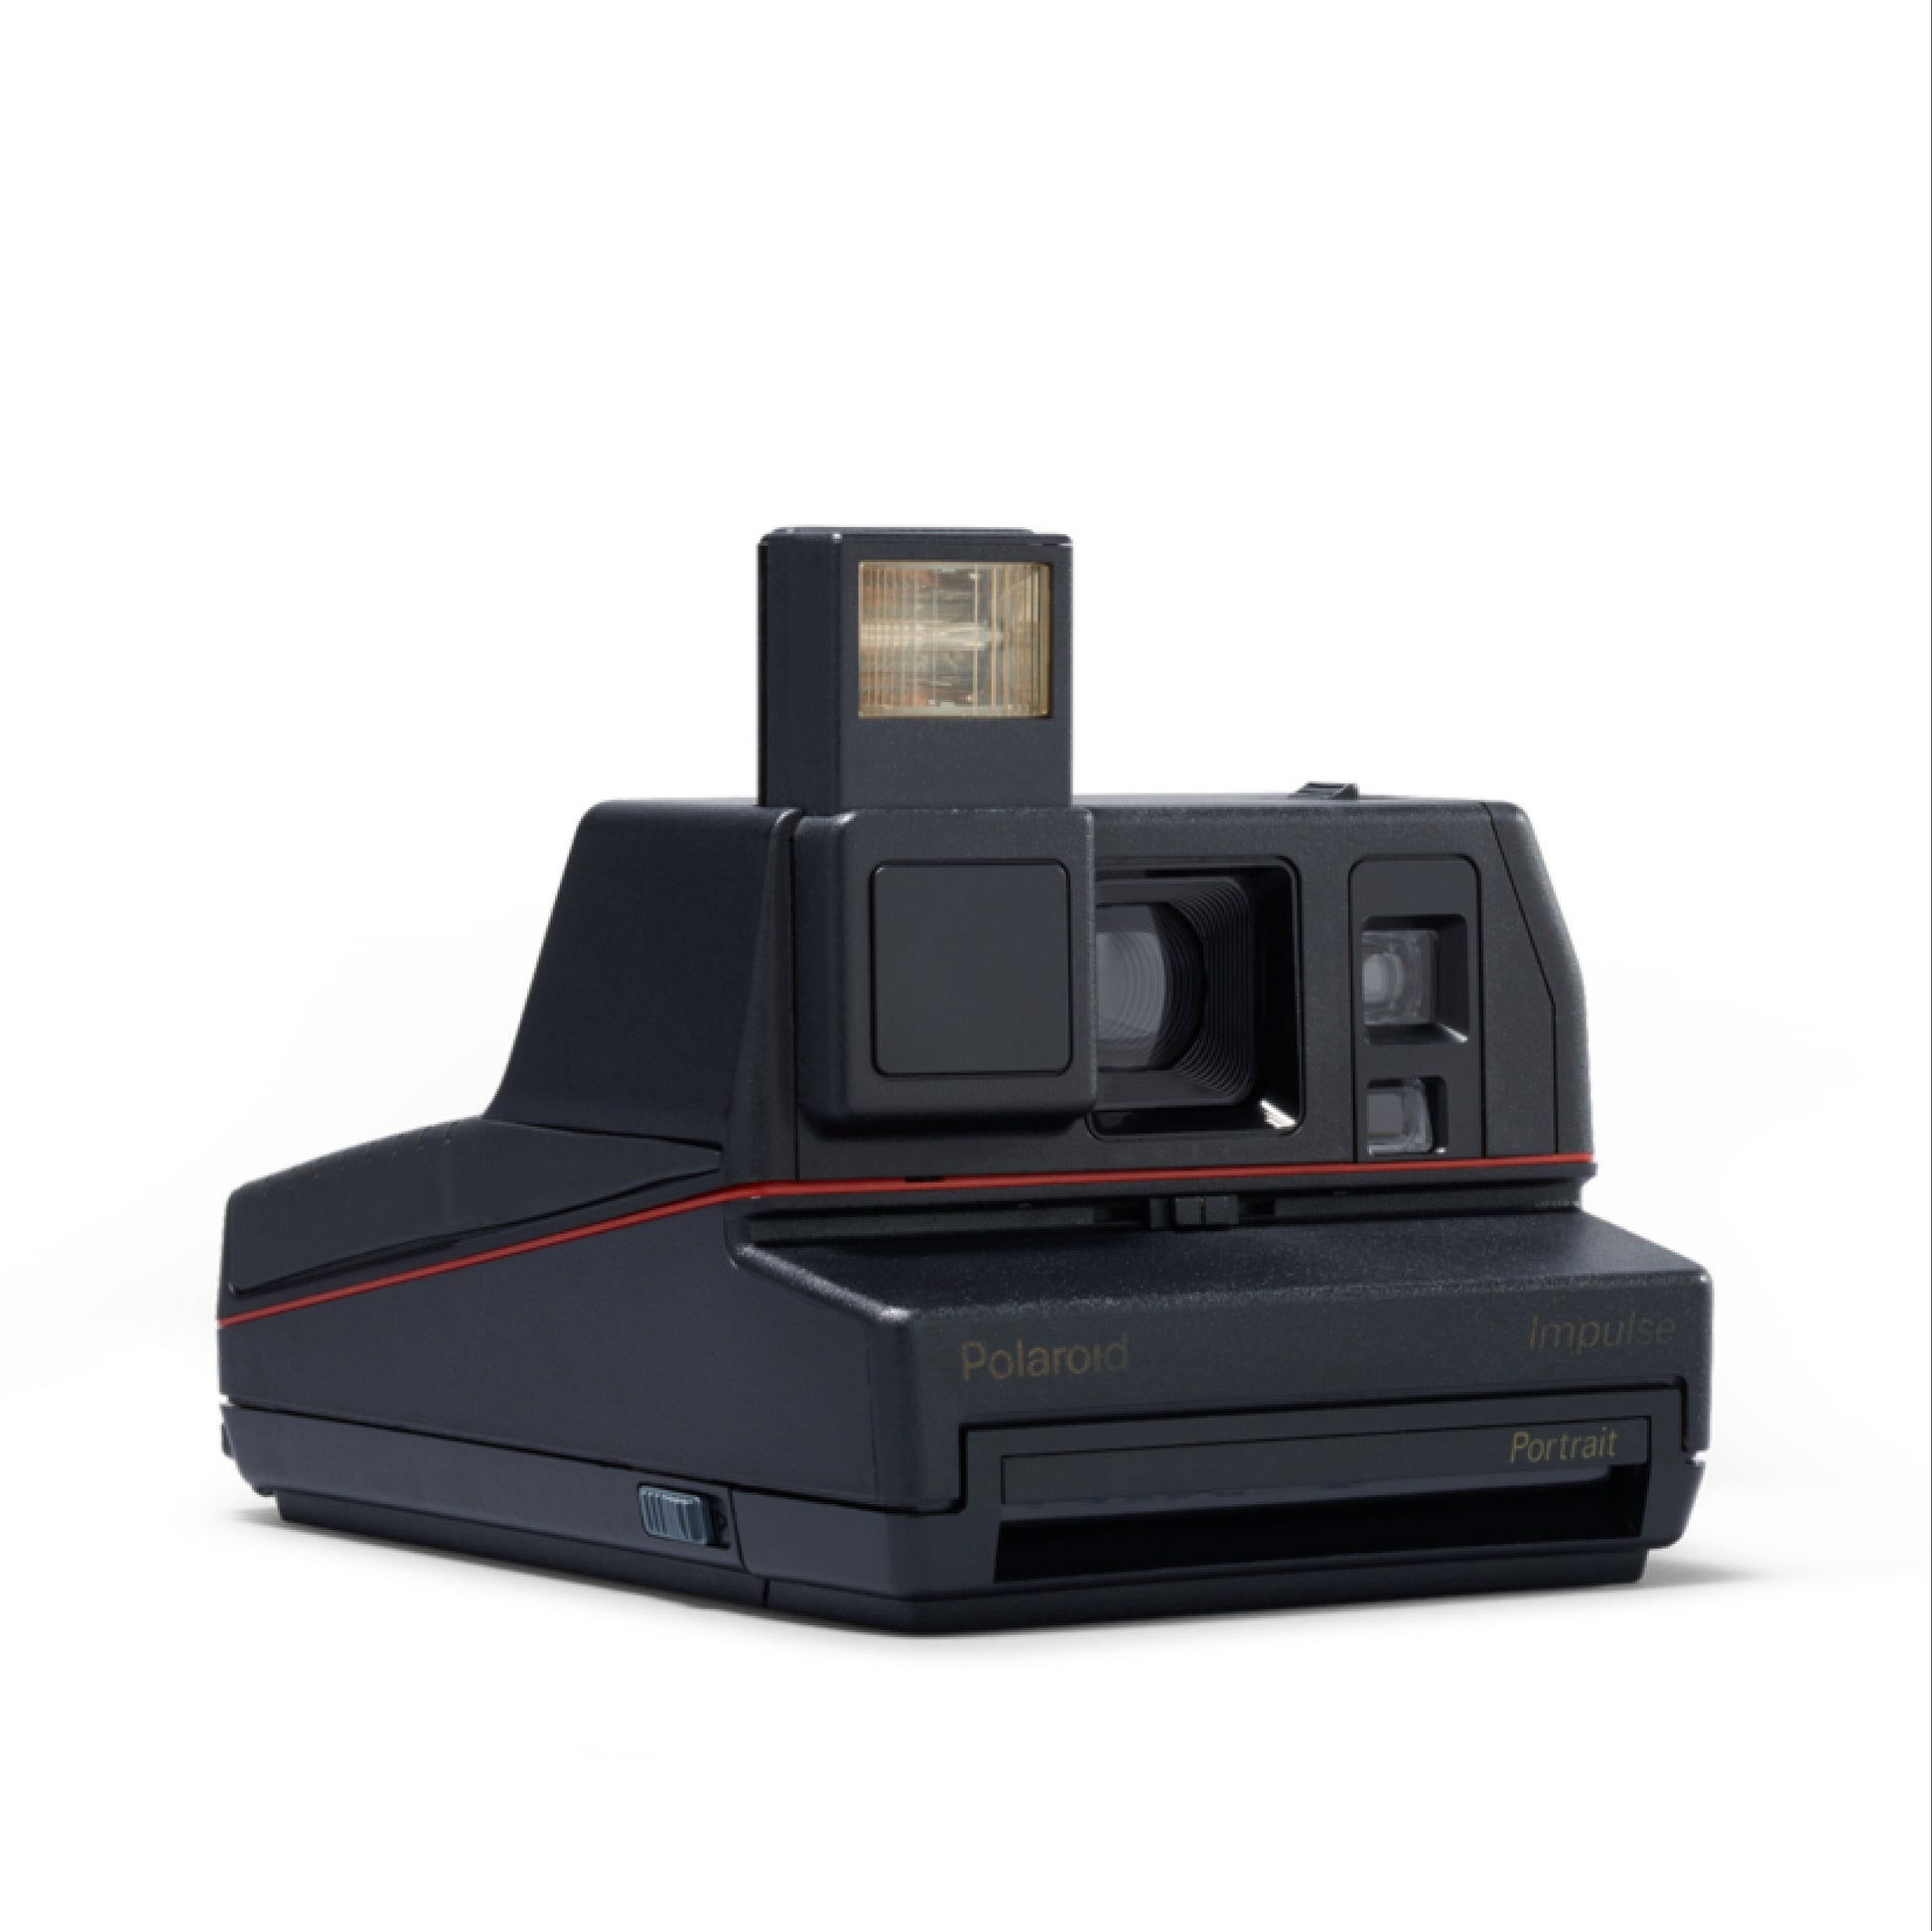 Instant Camera Polaroid Impulse Portait Instant Film Camera - Vintage Polaroid Instant Cameras